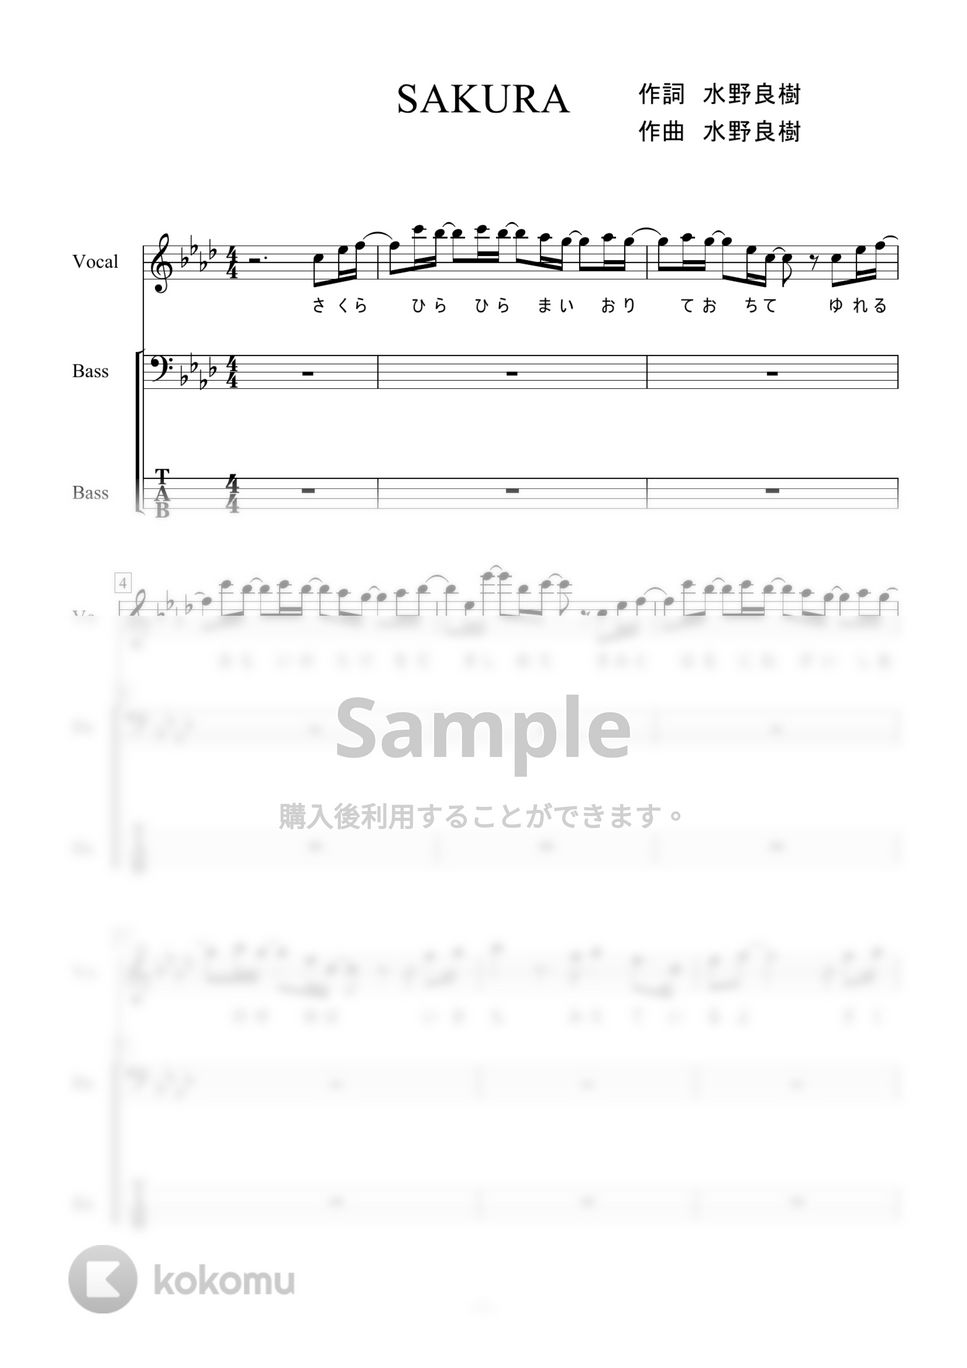 いきものがかり - SAKURA (ベース) by 二次元楽譜製作所